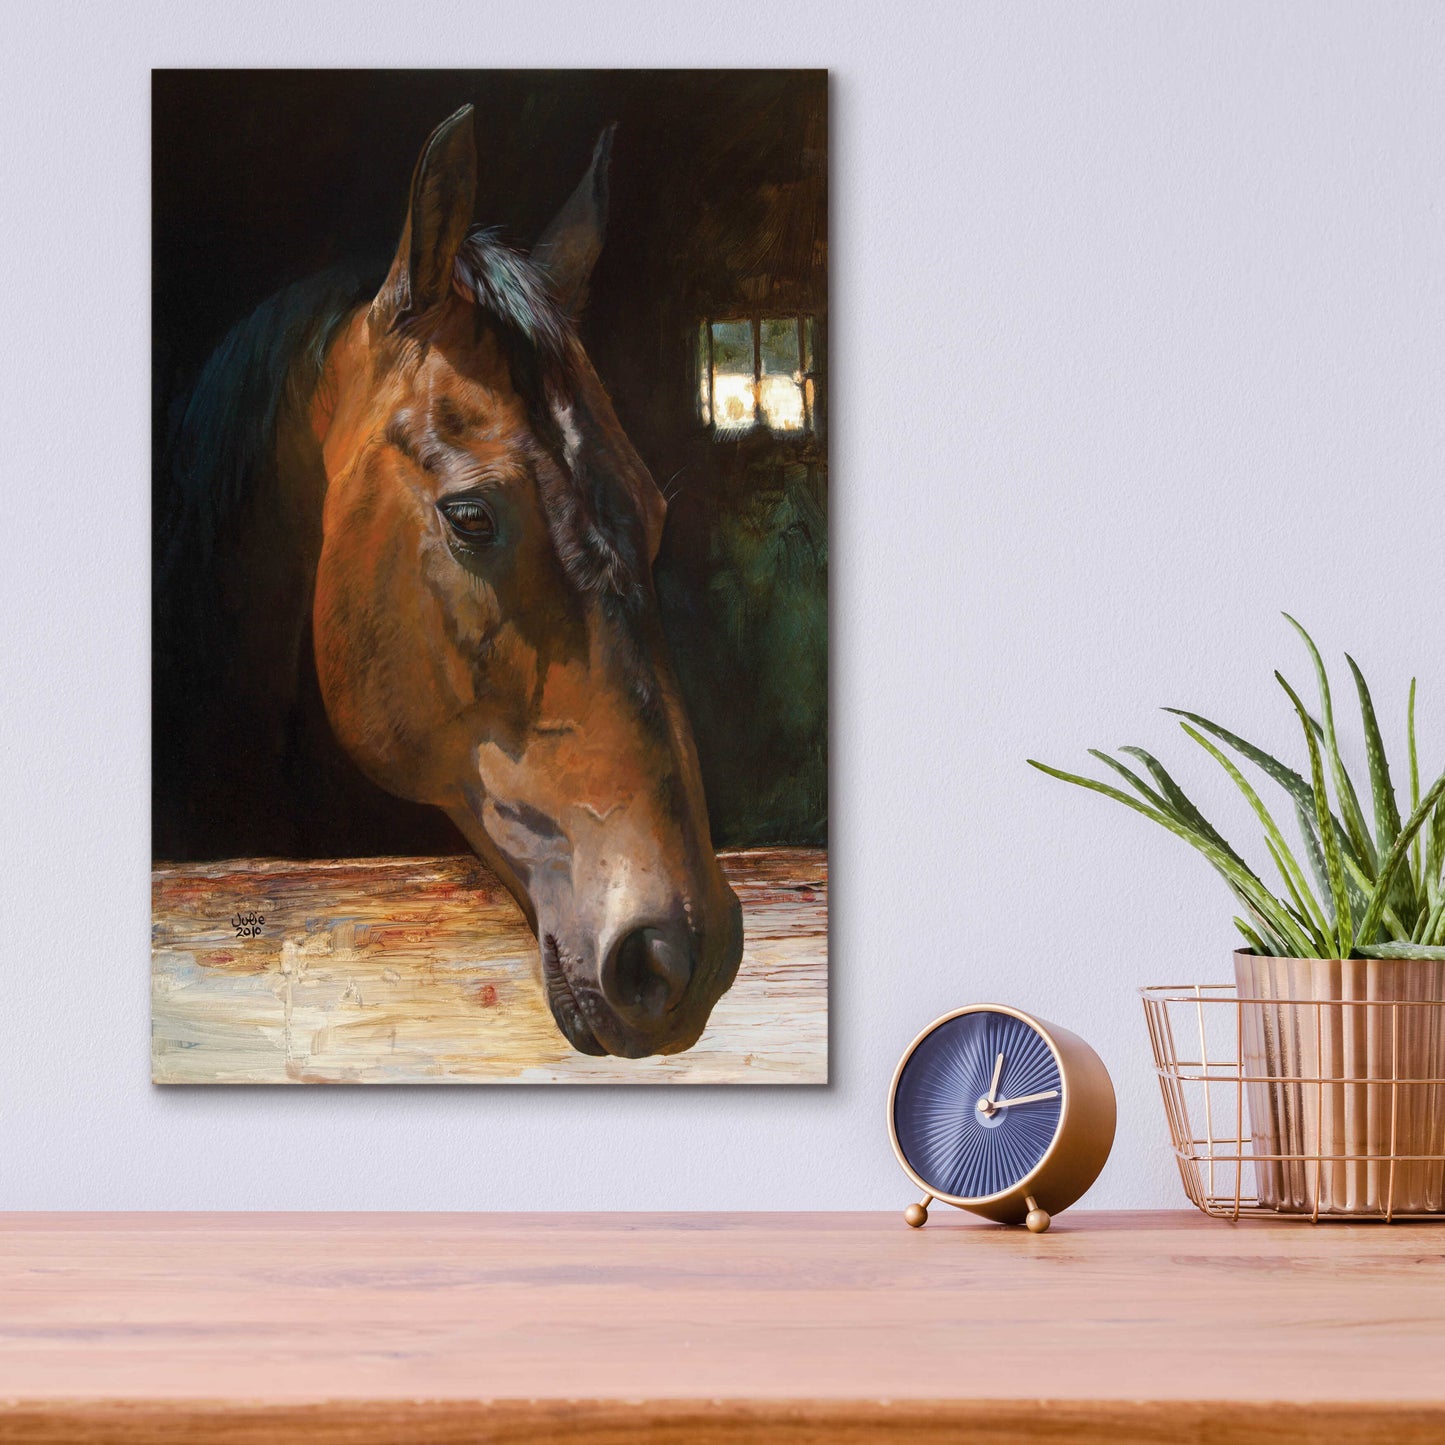 Epic Art 'Quakertown Horse' by Julie Bel, Acrylic Glass Wall Art,12x16